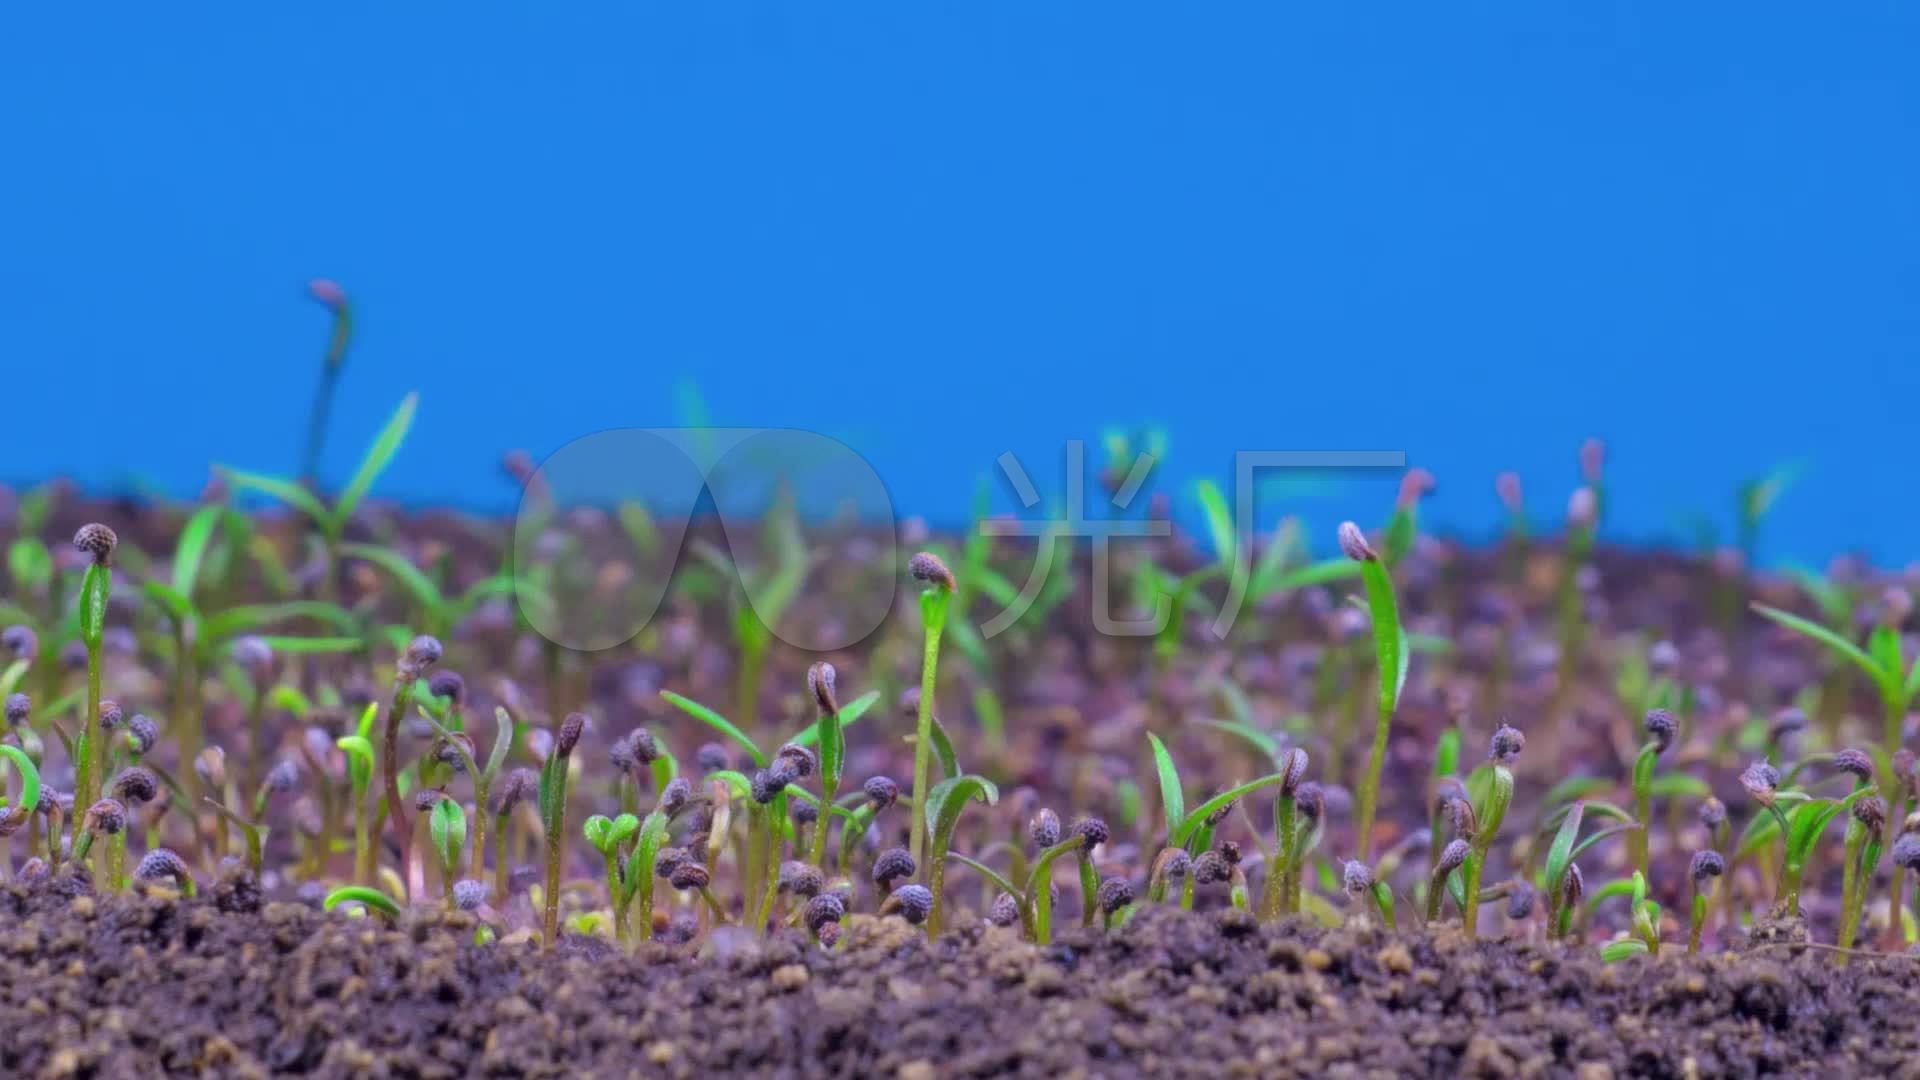 高清罂粟植物小草生长发芽破土而出动画2_1920x1080